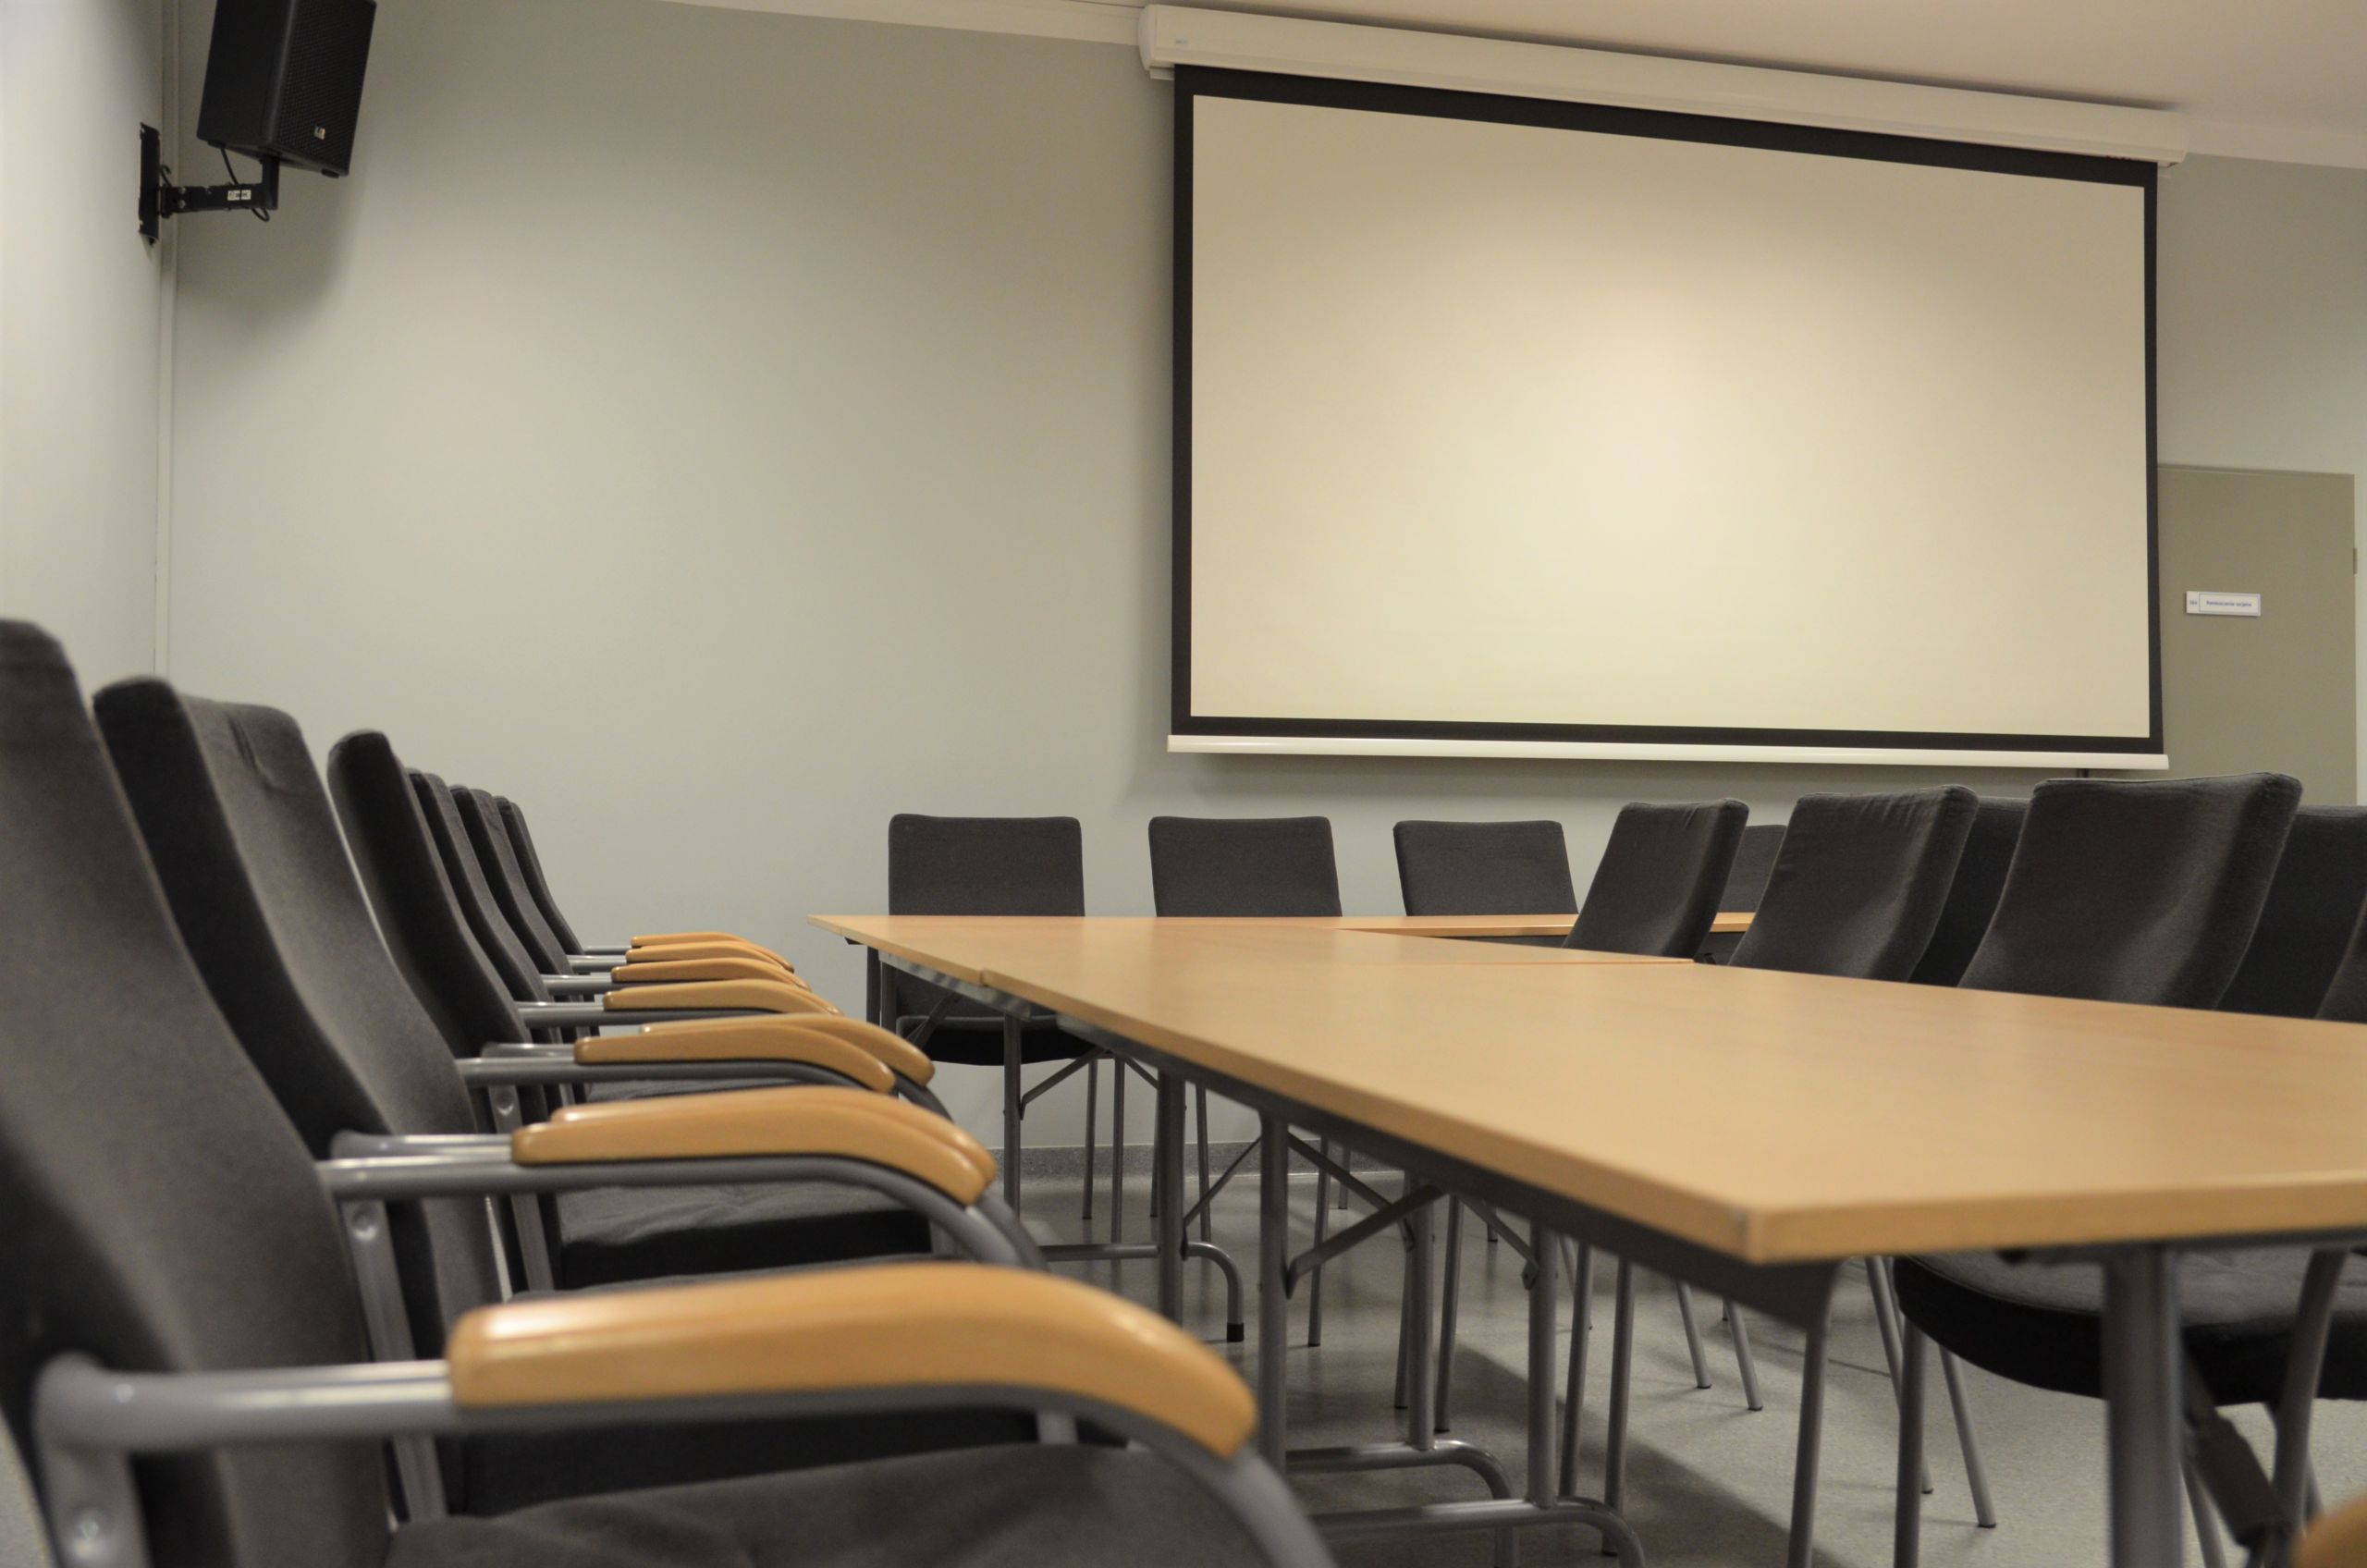 Zdjęcie przedstawiające salę konferencyjną. Przedstawia stoły ułożone w kształt litery C. Po obu stronach stołu poustawiane są krzesła. Na ścianie znajduje się ekran do rzutnika, a w rogu sali znajduje się głośnik.